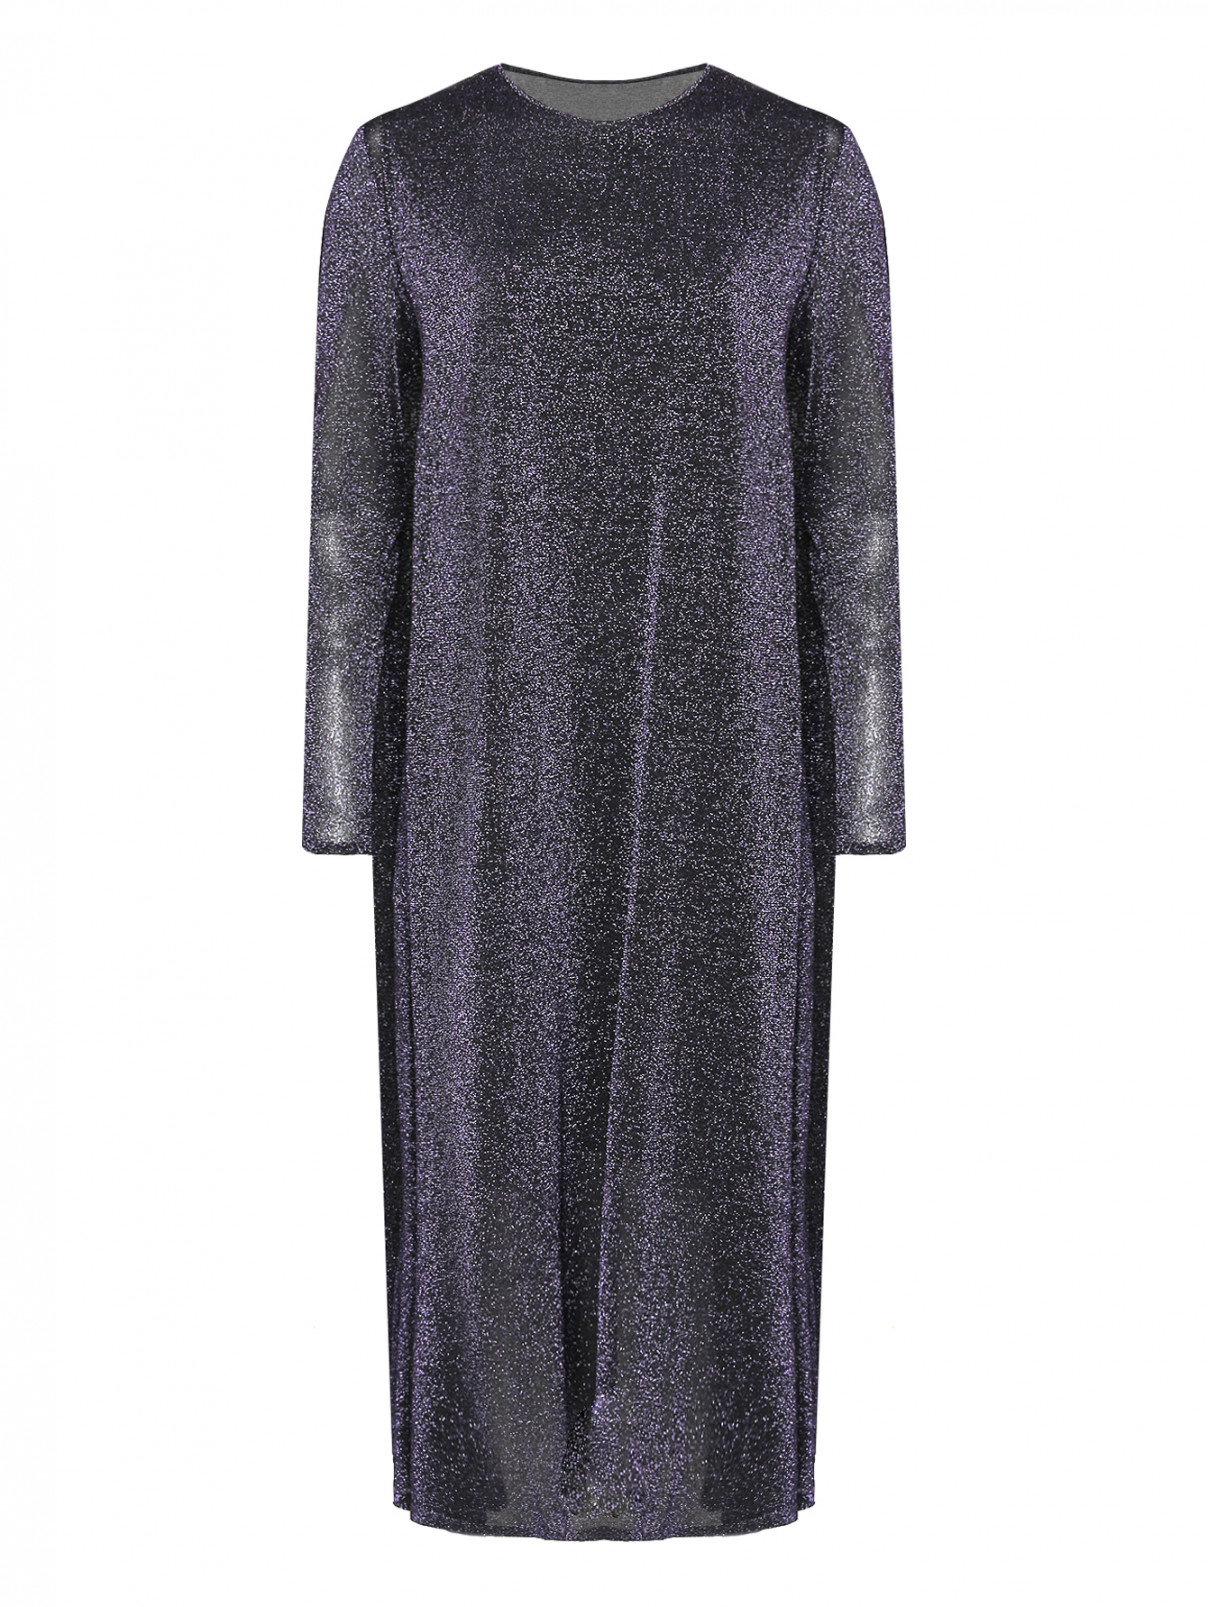 Трикотажное платье-миди с люрексом Marina Rinaldi  –  Общий вид  – Цвет:  Фиолетовый